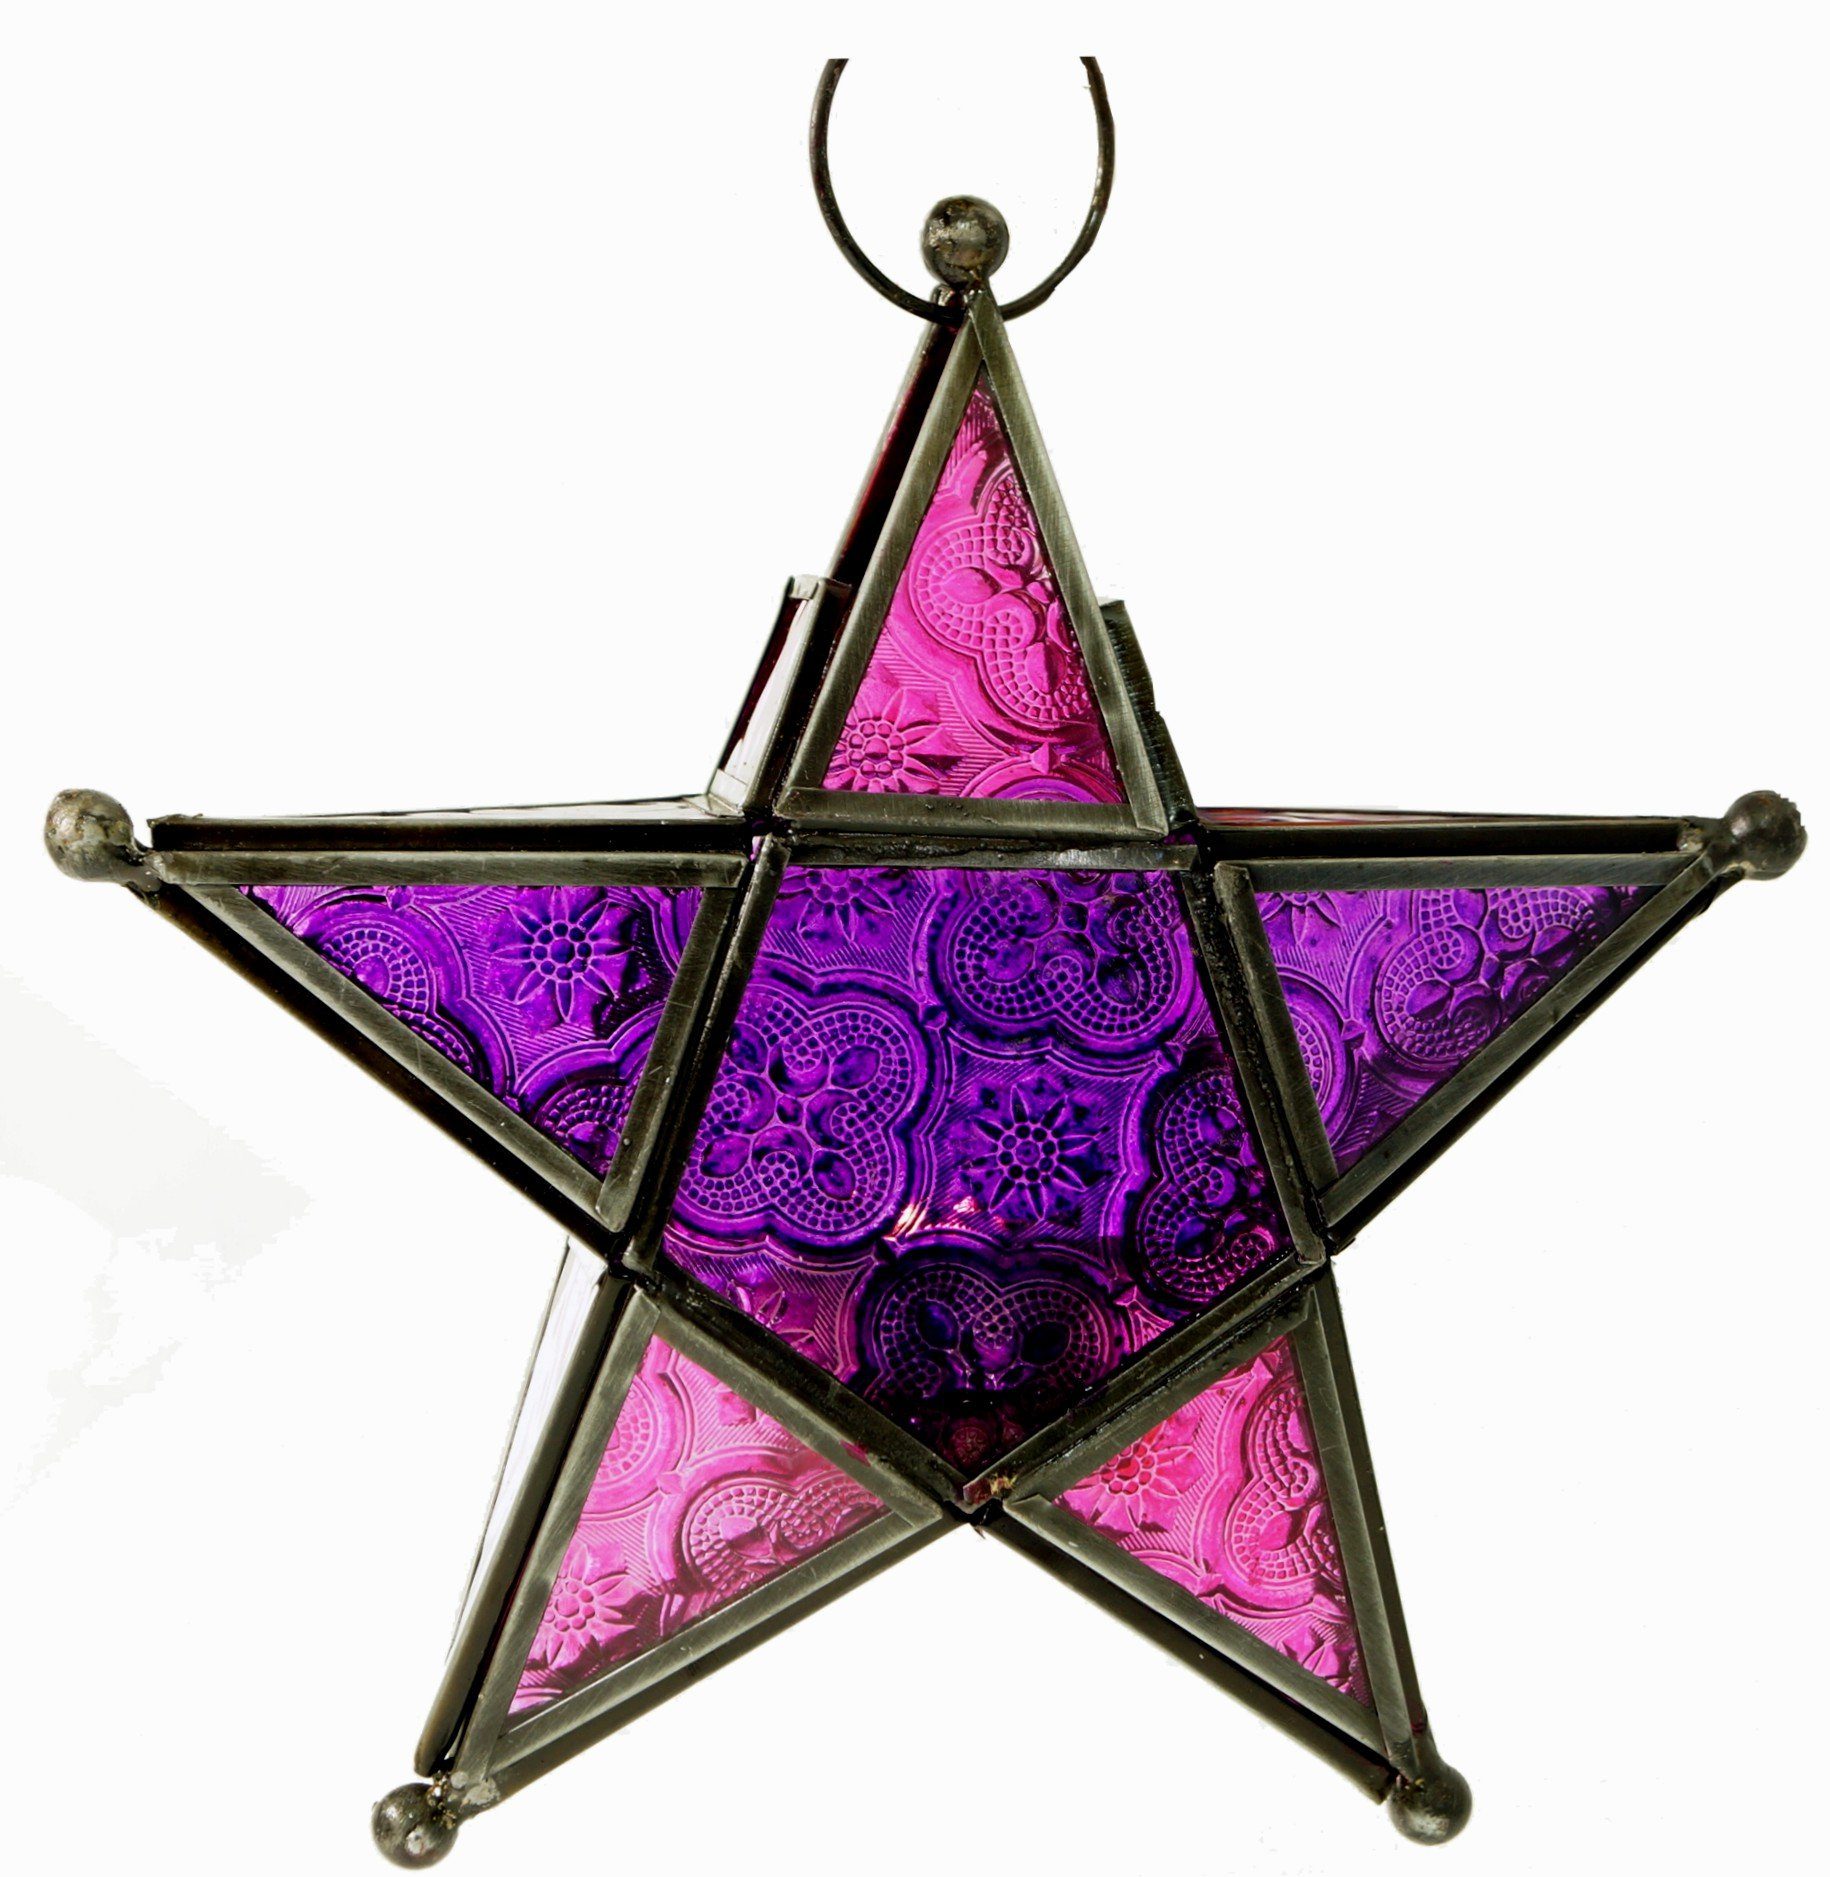 Glas Windlicht marrokanischem.. lila/pink-bunt Orientalischer Stern Guru-Shop in